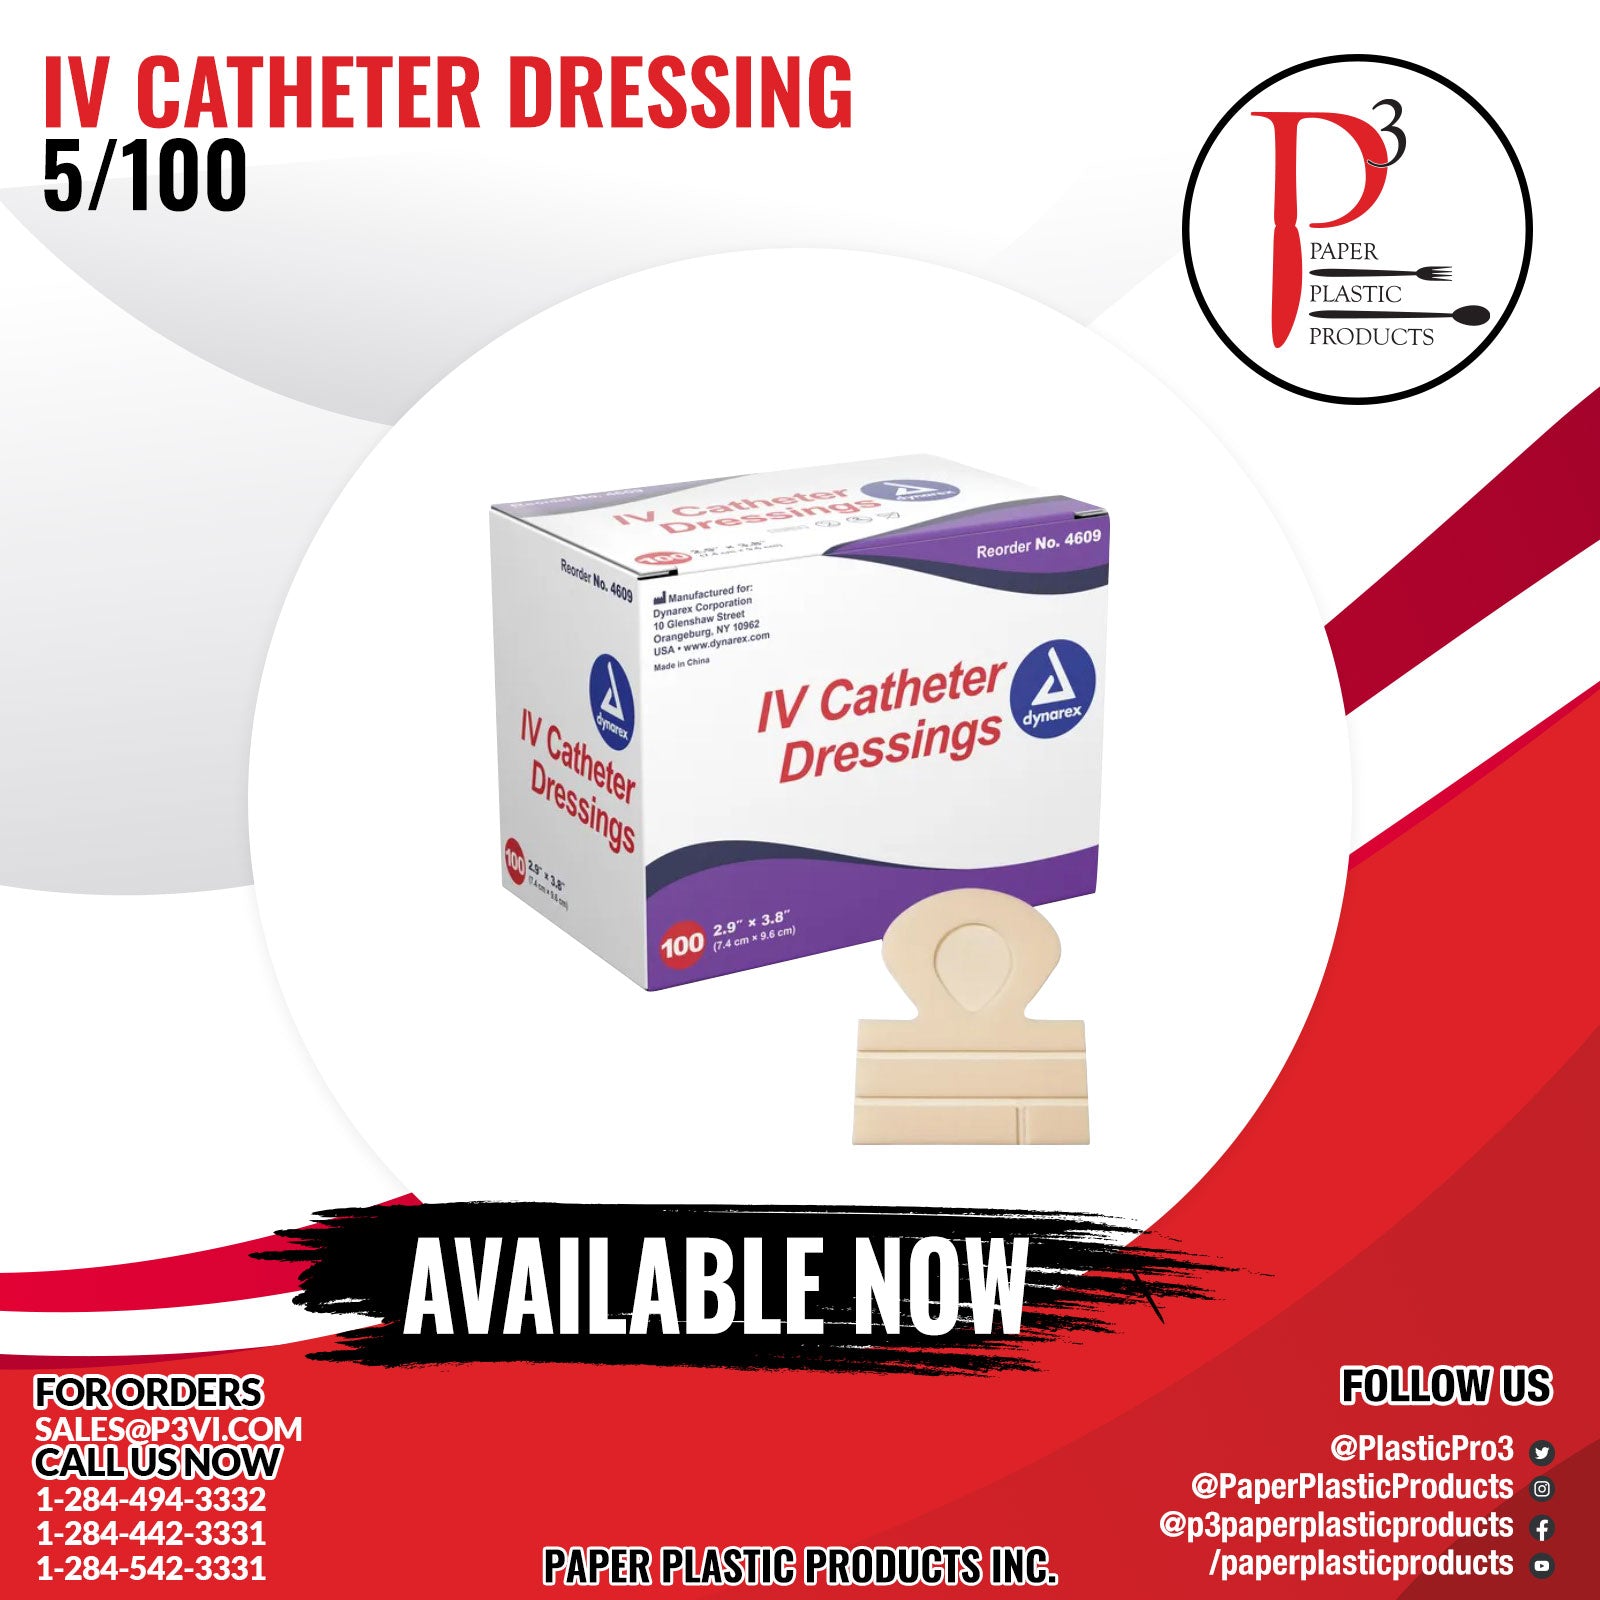 IV Catheter Dressing 5/100